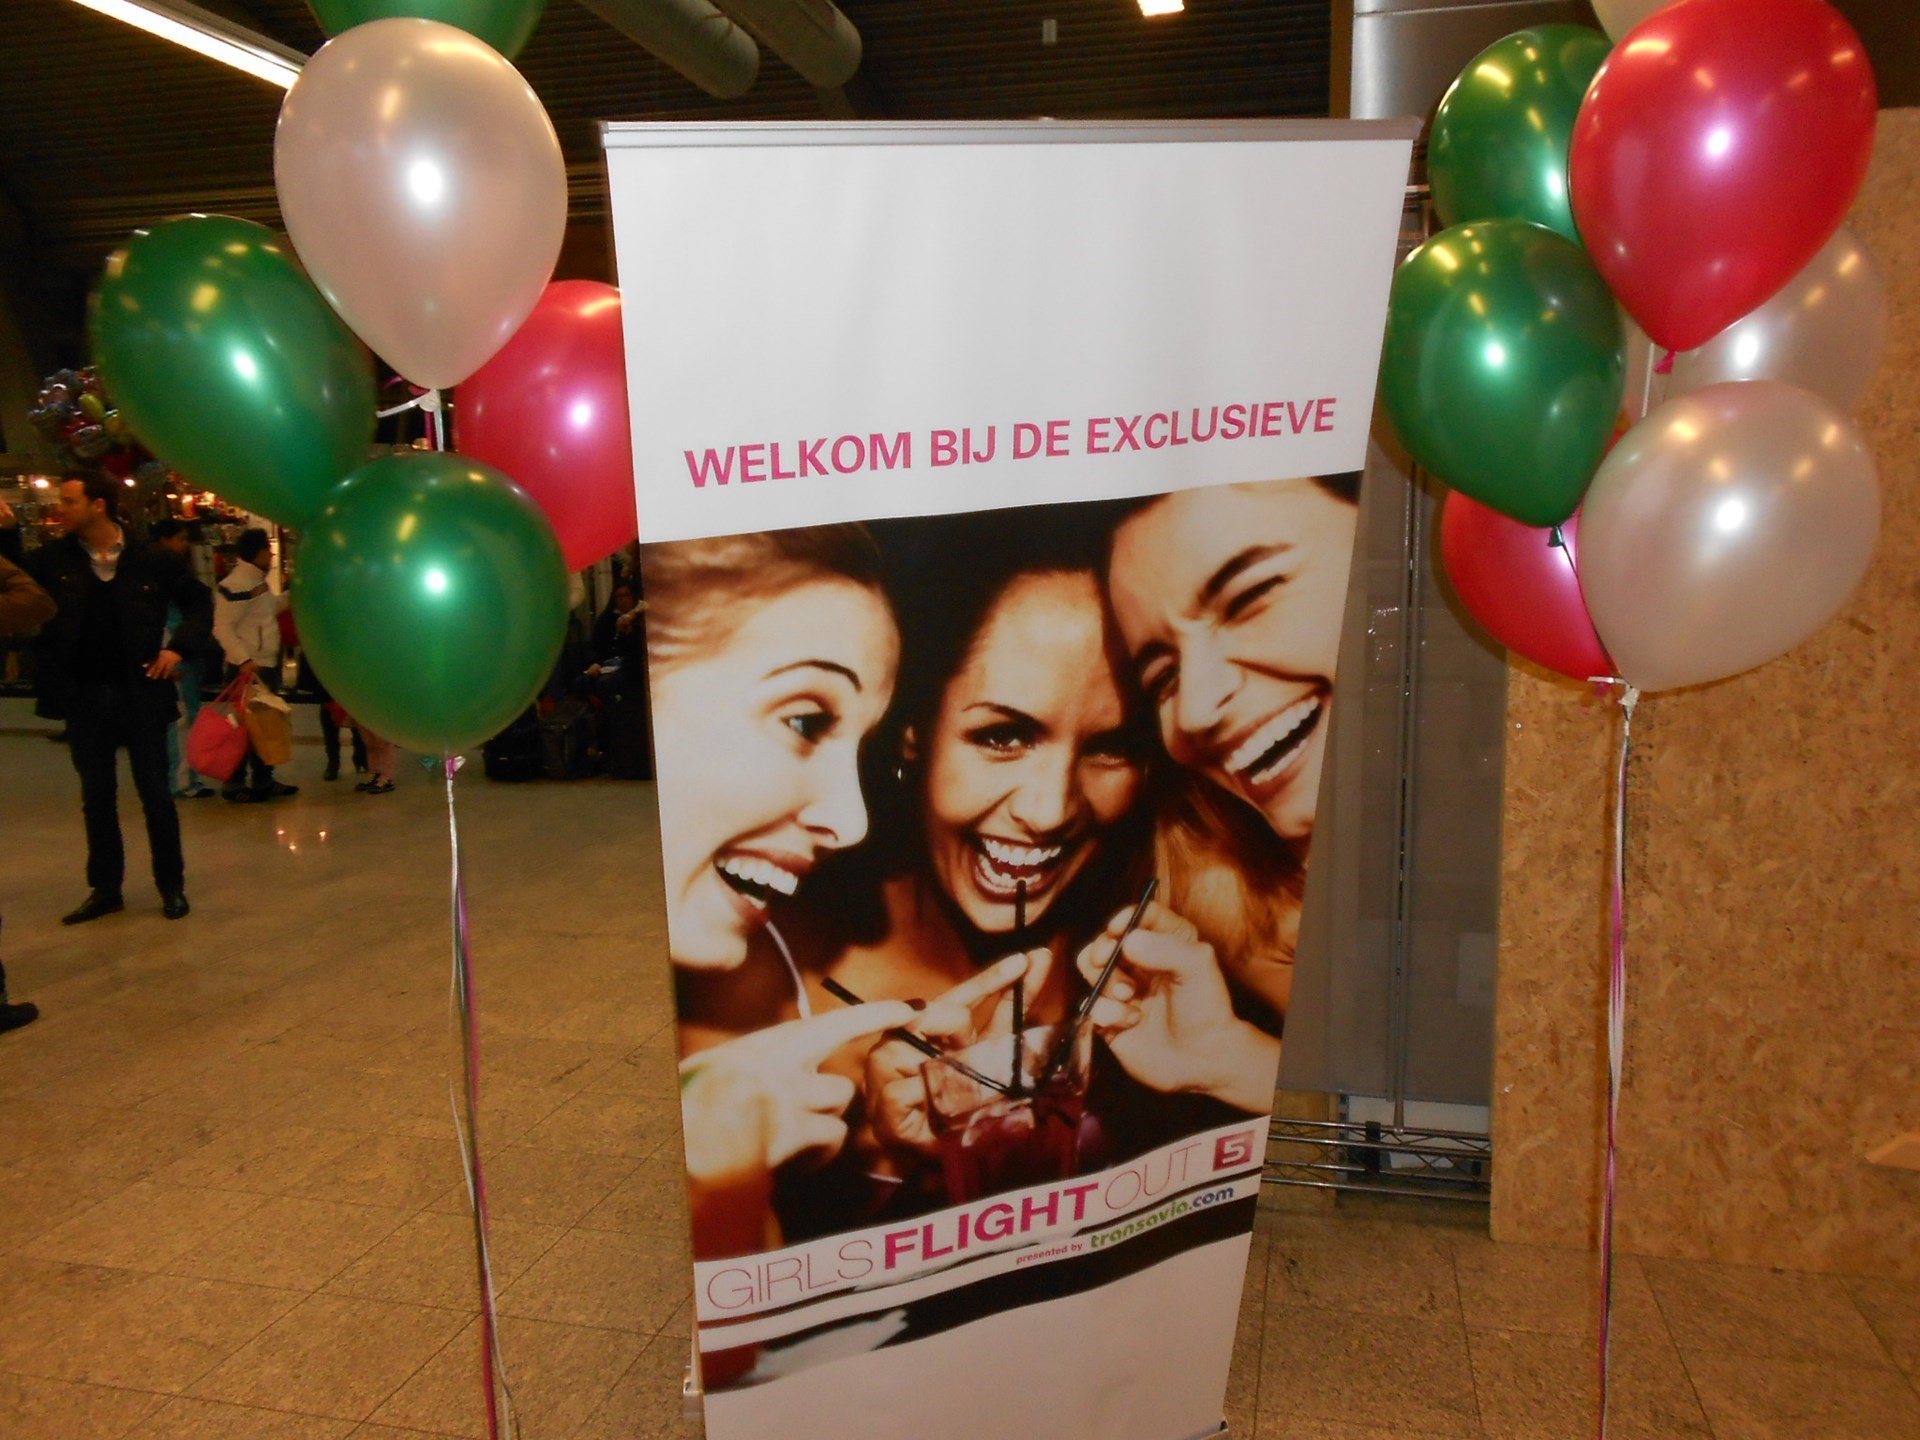 ballonnen met helium voor Girls Flight Out vliegveld Eindhoven